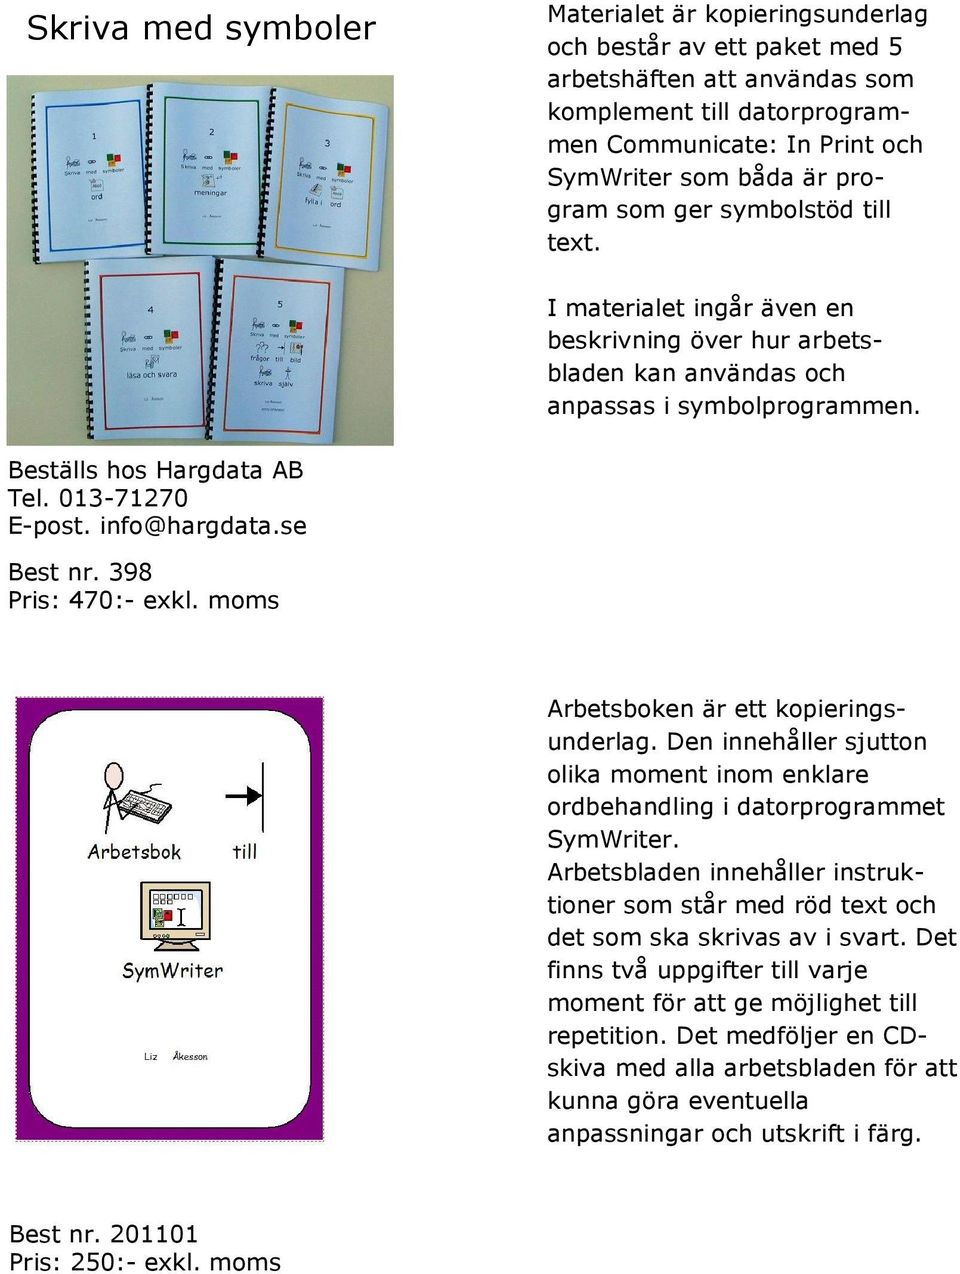 info@hargdata.se Best nr. 398 Pris: 470:- exkl. moms Arbetsboken är ett kopieringsunderlag. Den innehåller sjutton olika moment inom enklare ordbehandling i datorprogrammet SymWriter.